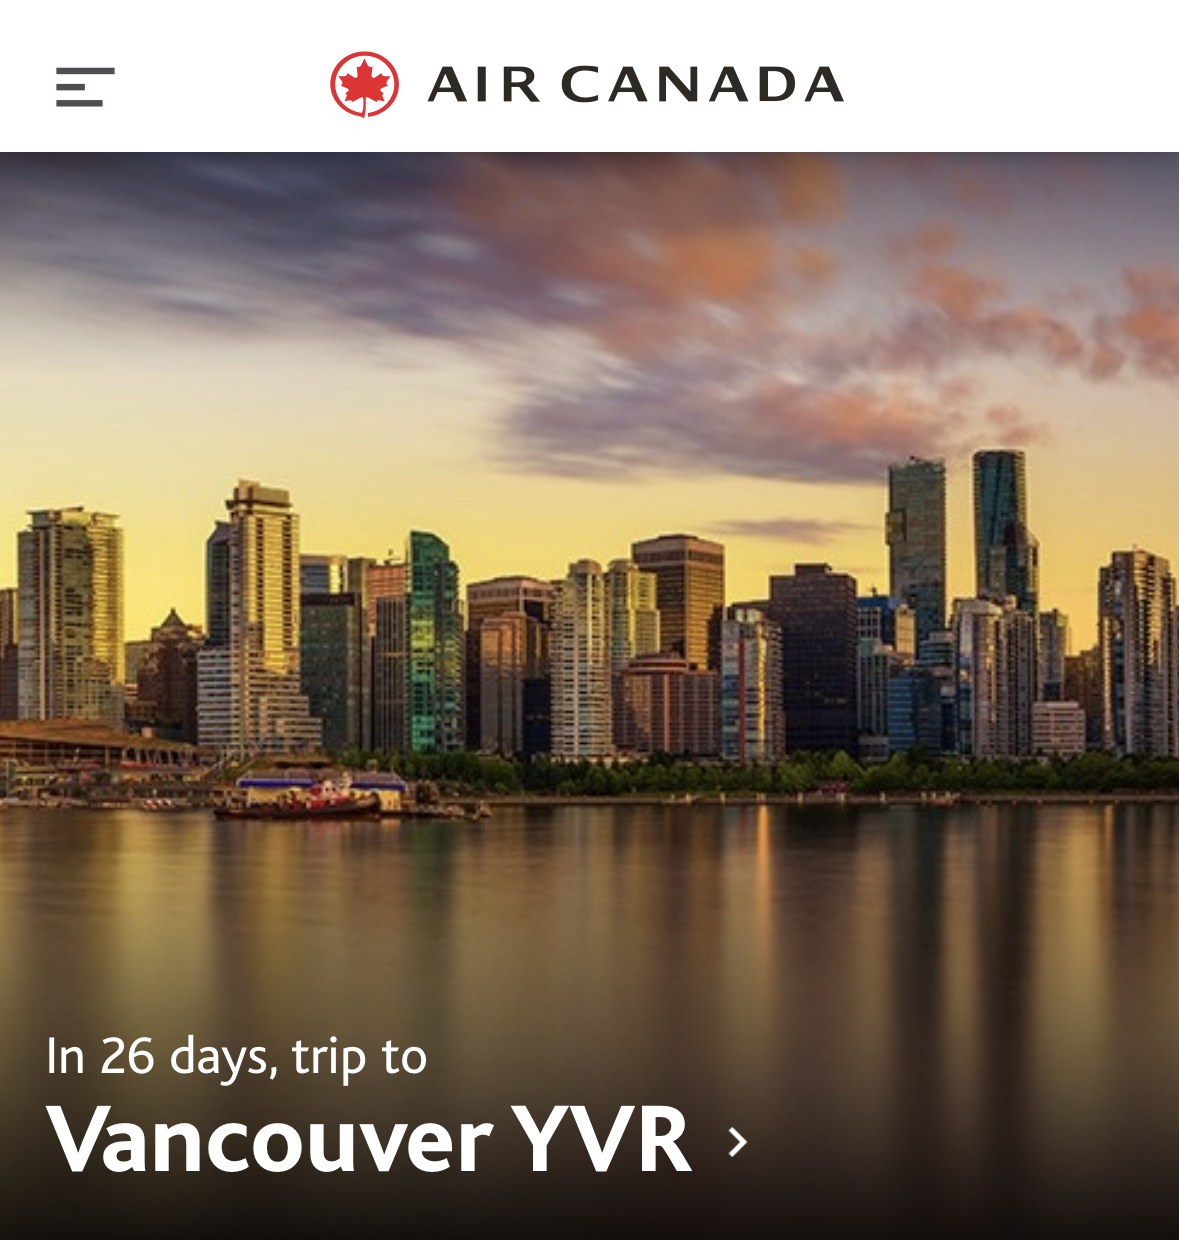 Ansicht aus der Air Canada App, zeigt die Skyline von Vancouver